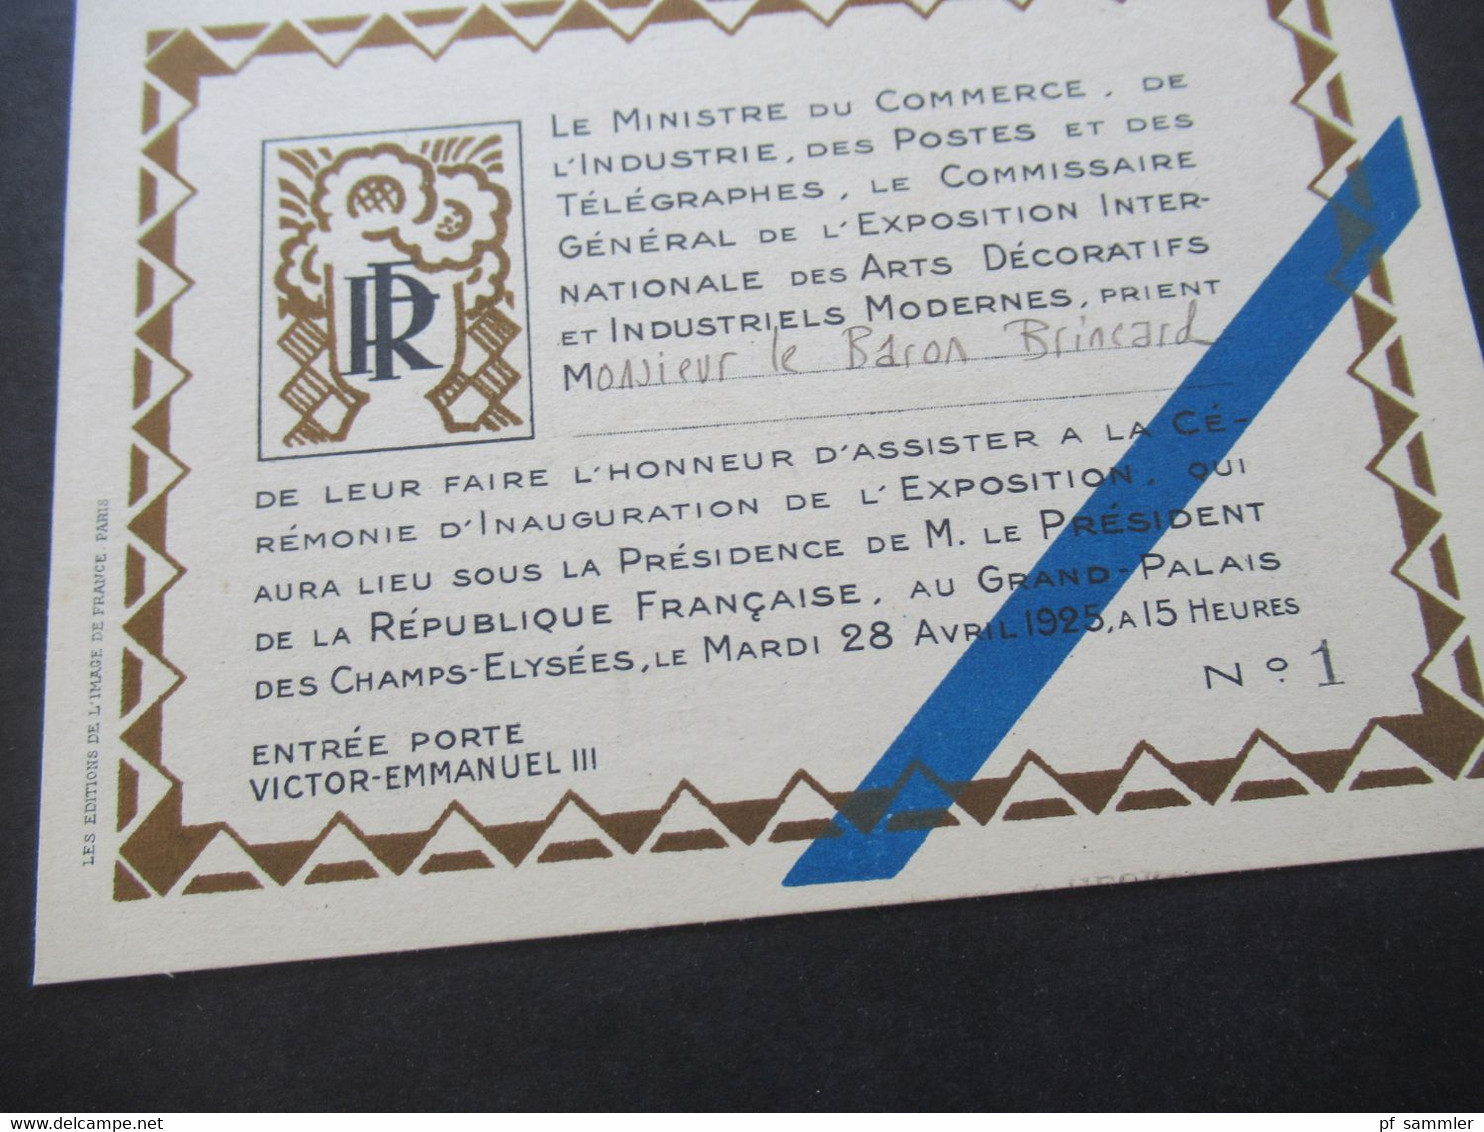 1925 originale Einladungskarte mit Faltblatt Exposition Internationale des Arts Decoratif et Industriels Modernes Paris